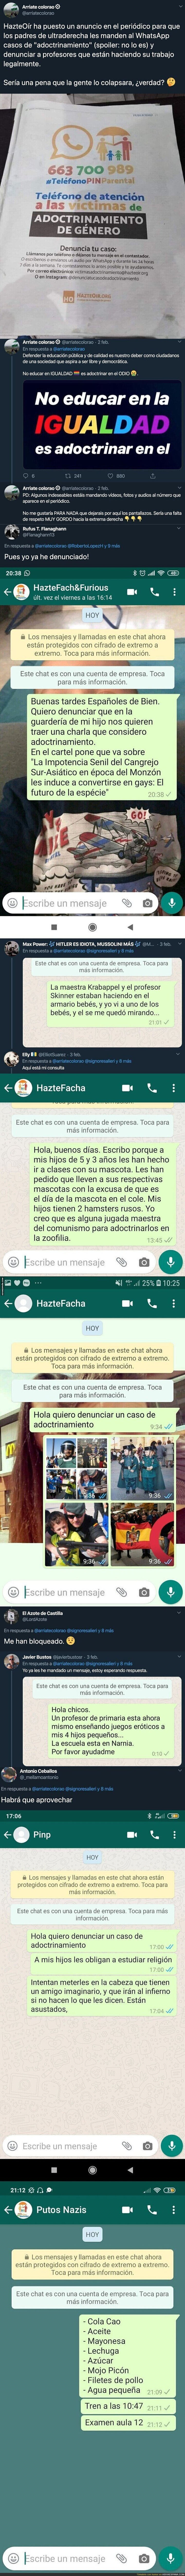 'HazteOír' anuncia su teléfono en un periódico y Twitter se organiza para trolearle de la mejor forma dejándole todos estos mensajes